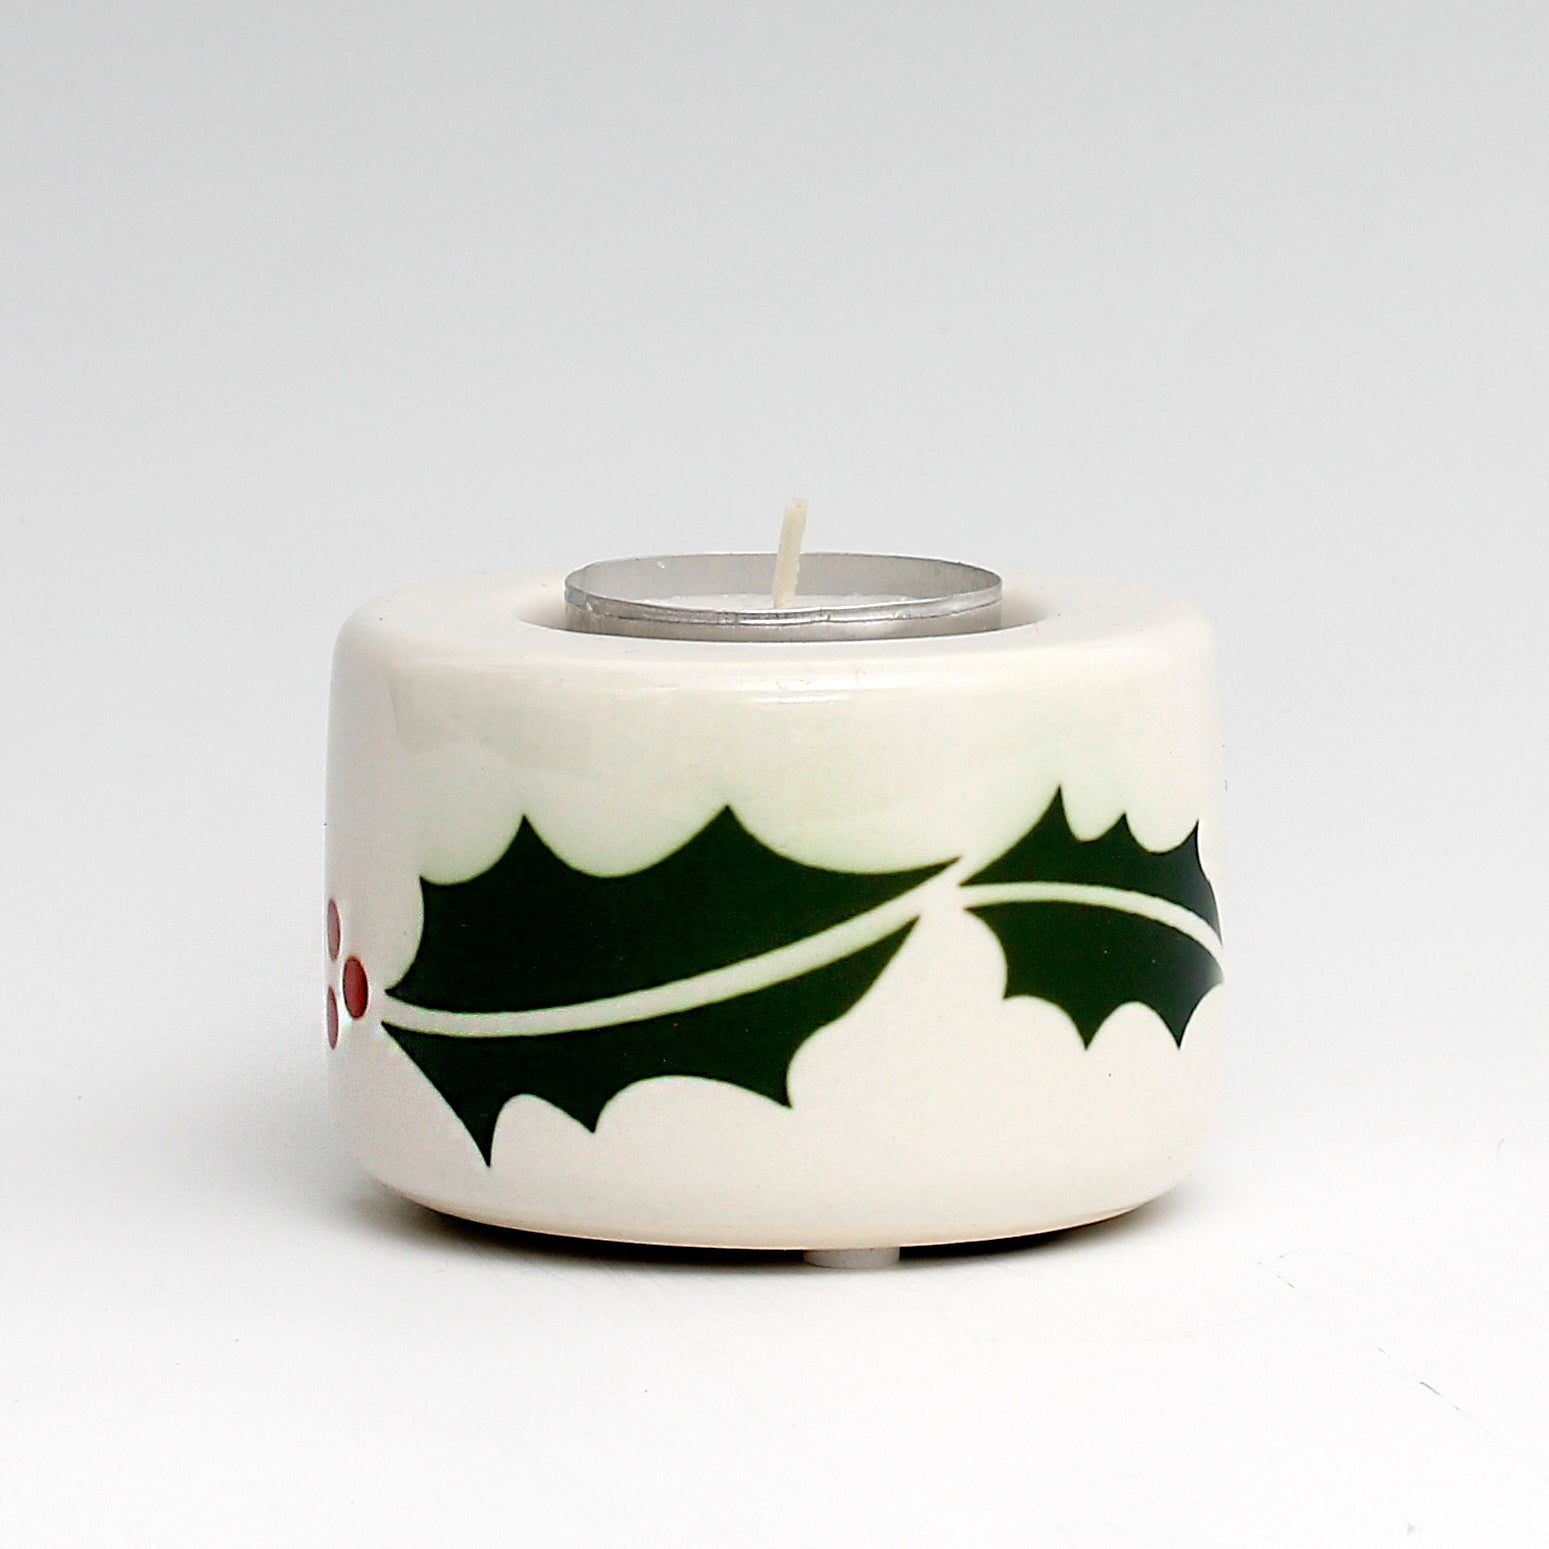 SUBLIMART: Ceramic Tealight in Christmas Design #2